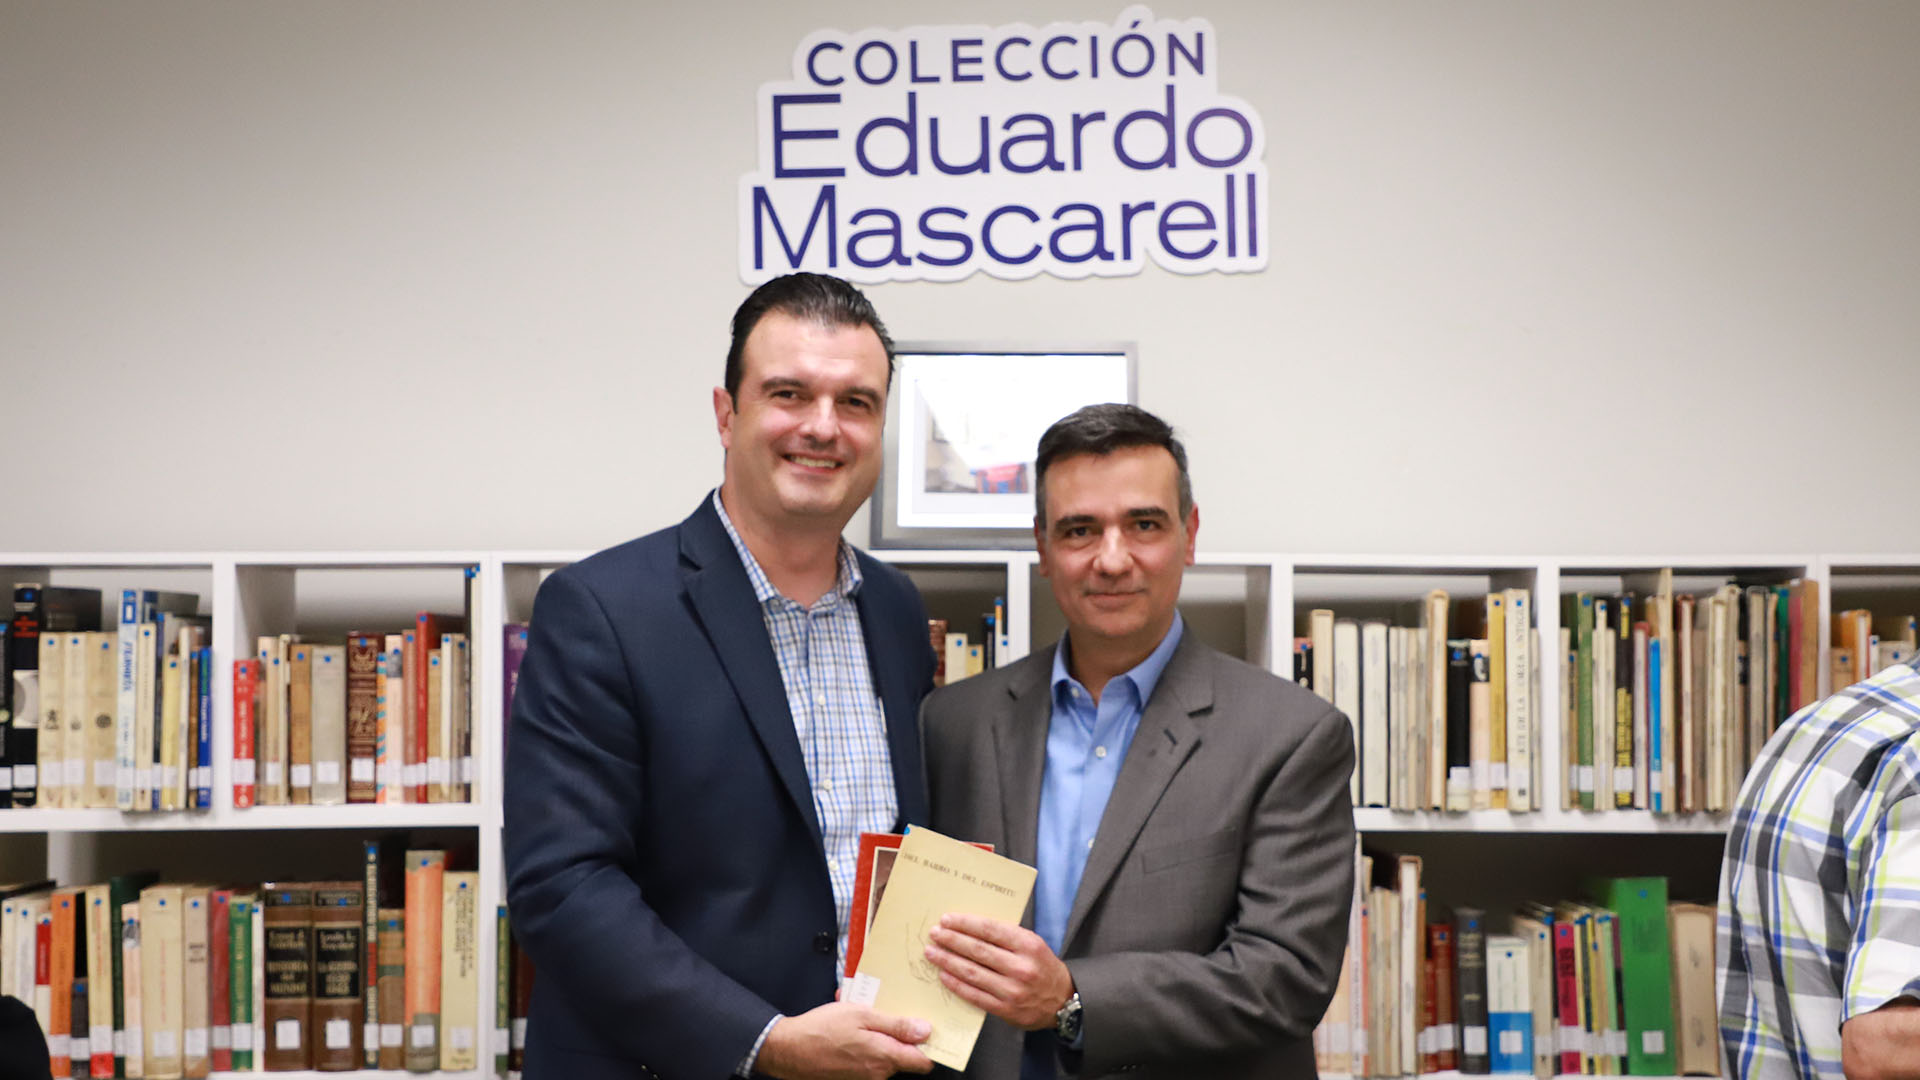 Eduardo Mascarell